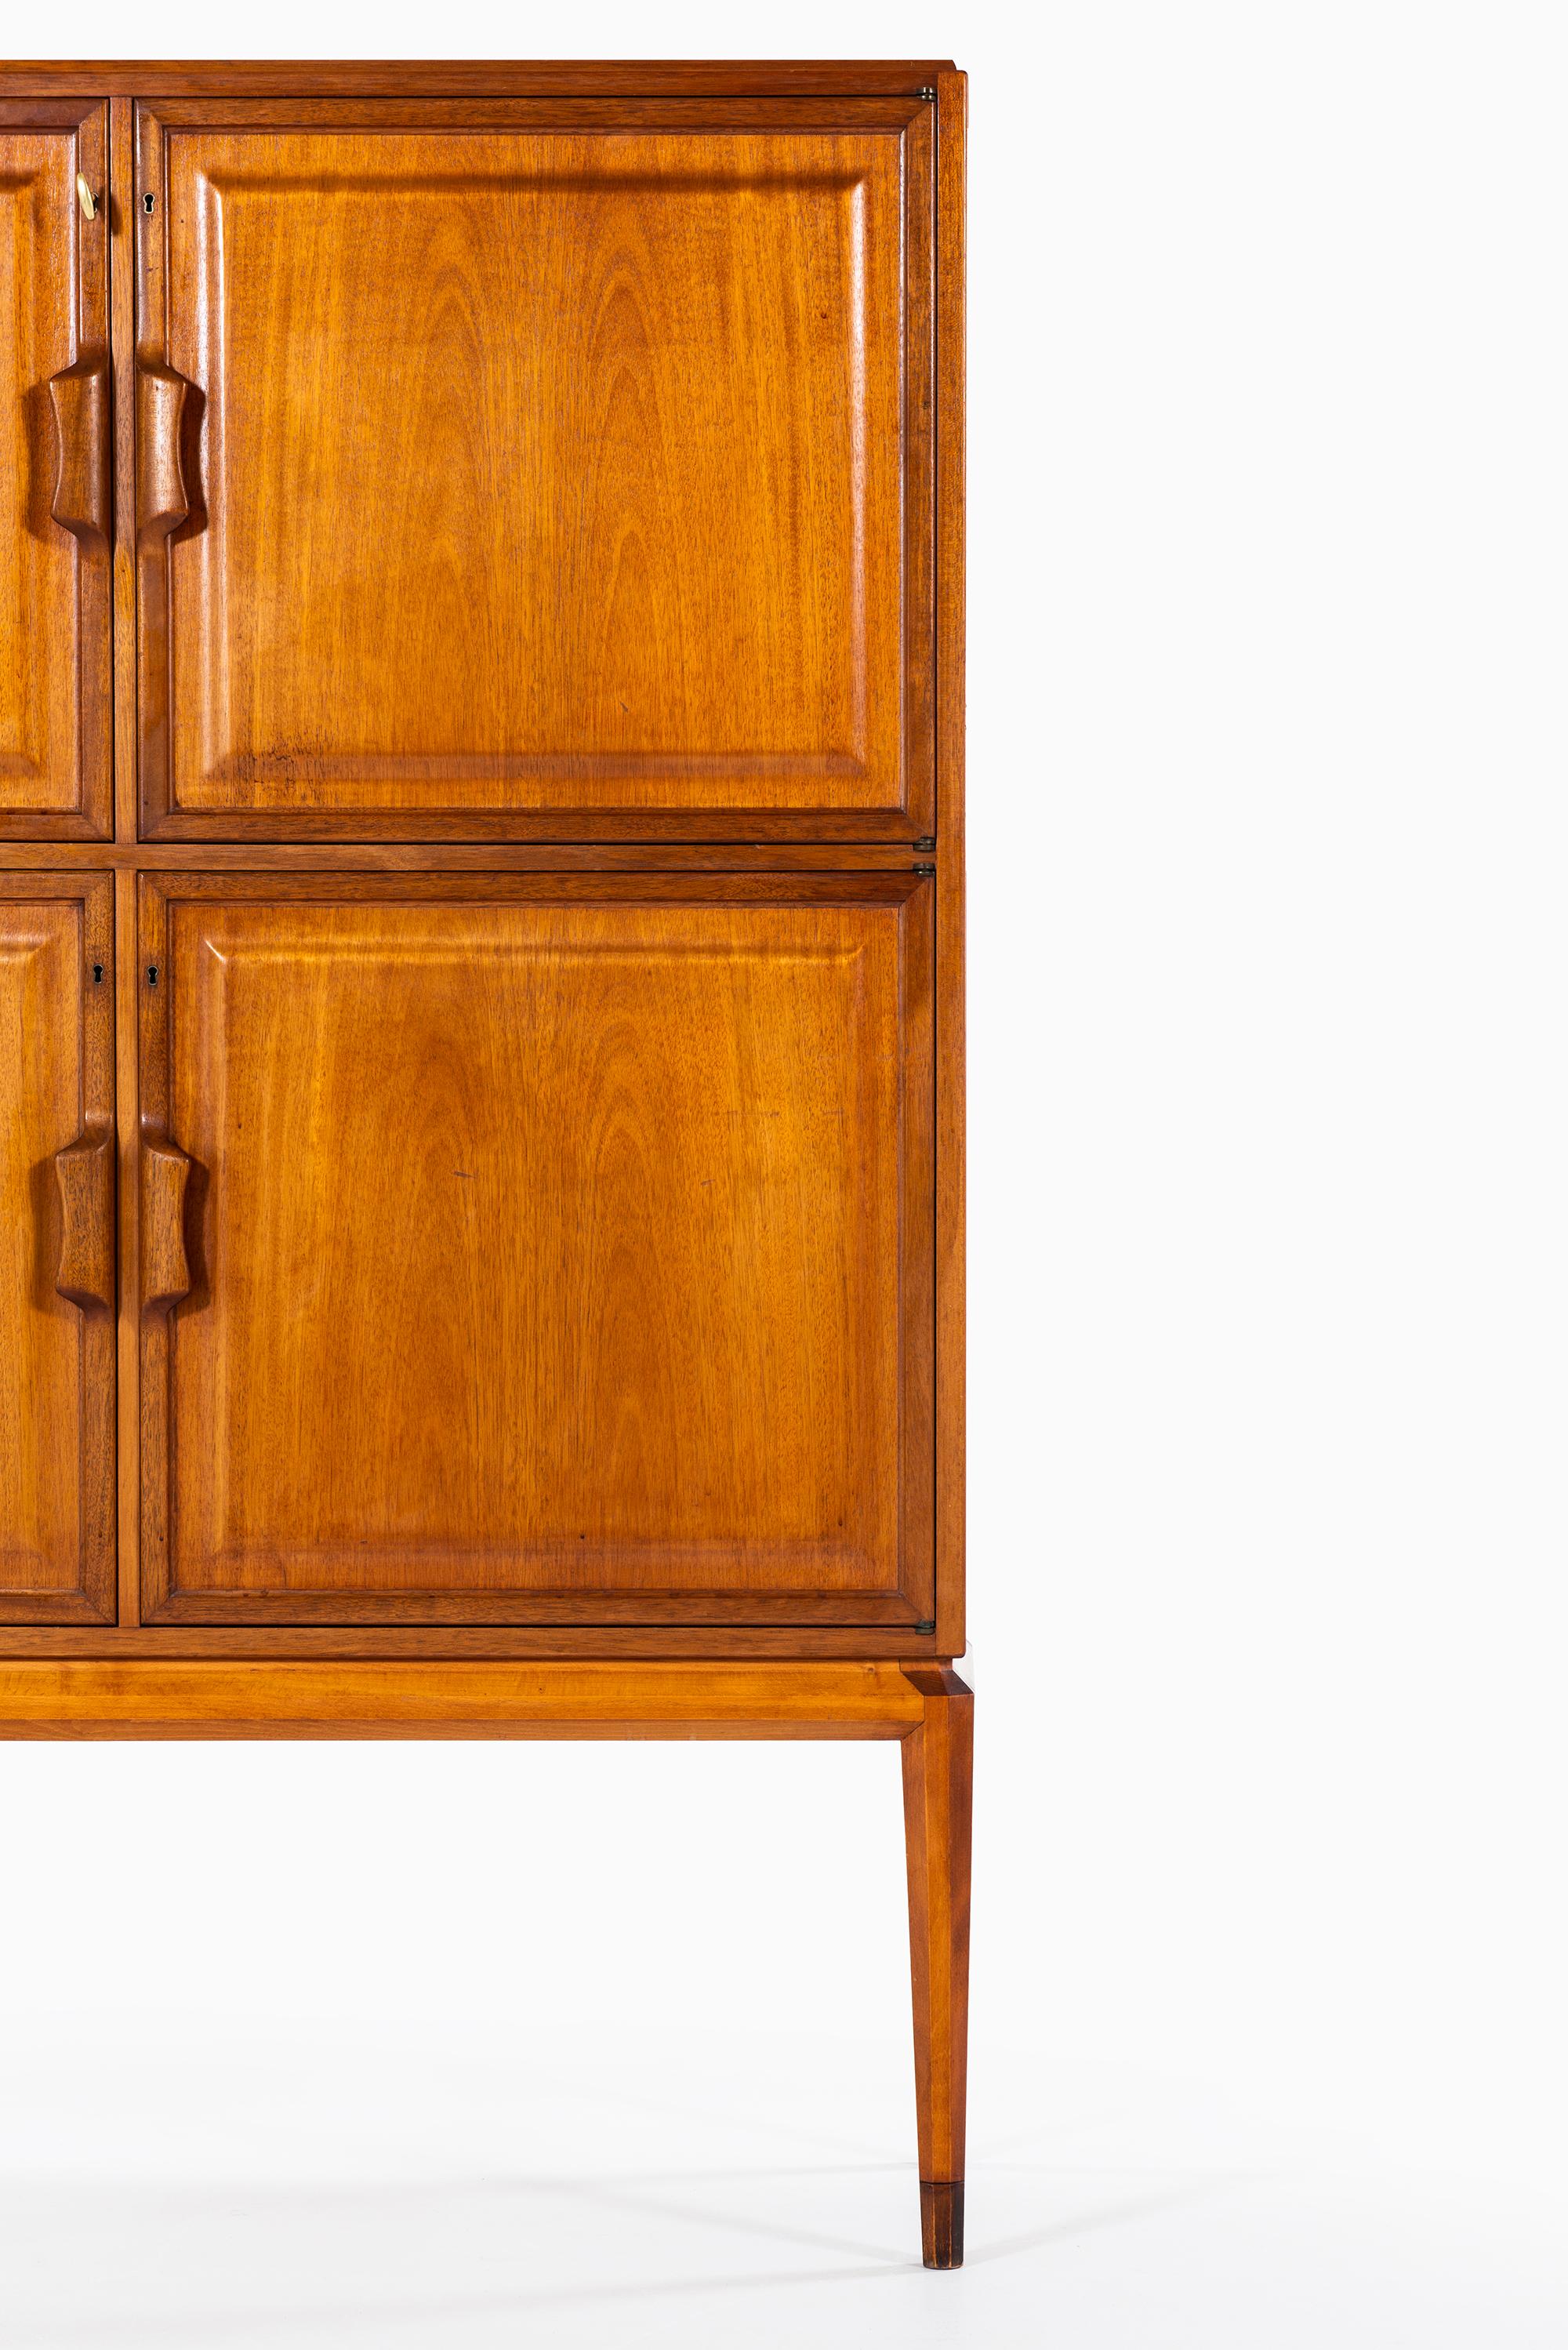 Rare cabinet model Facett designed by Bertil Fridhagen. Produced by Bodafors in Sweden.